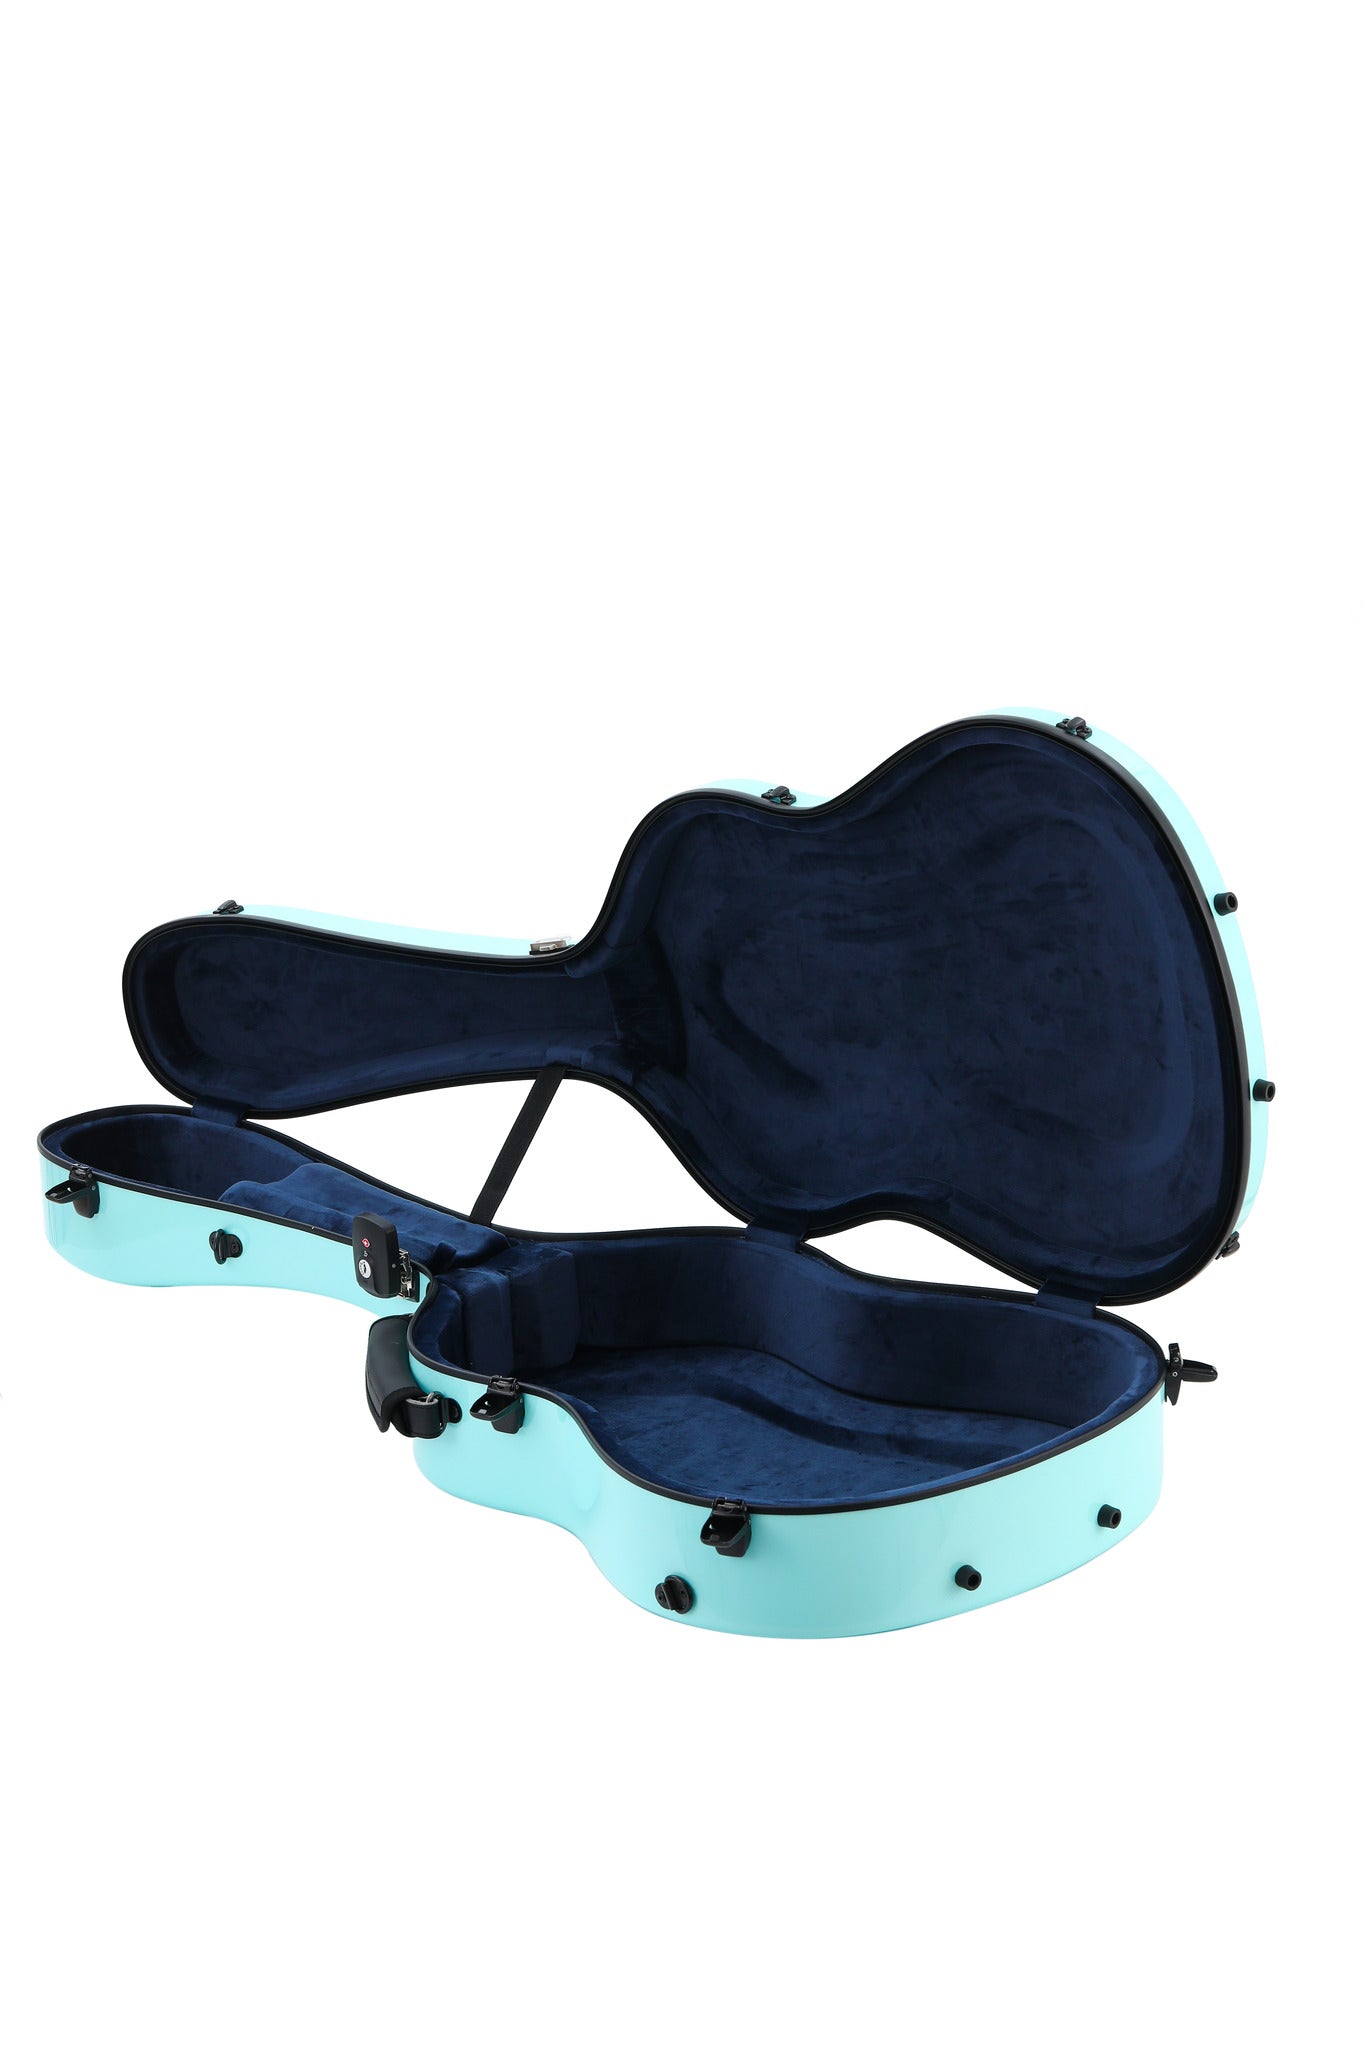 Alba Guitar Beads Case Tiffany Carbon Pattern Gloss para Guitarra Clásica Acústica, Estuche para guitarra flamenca